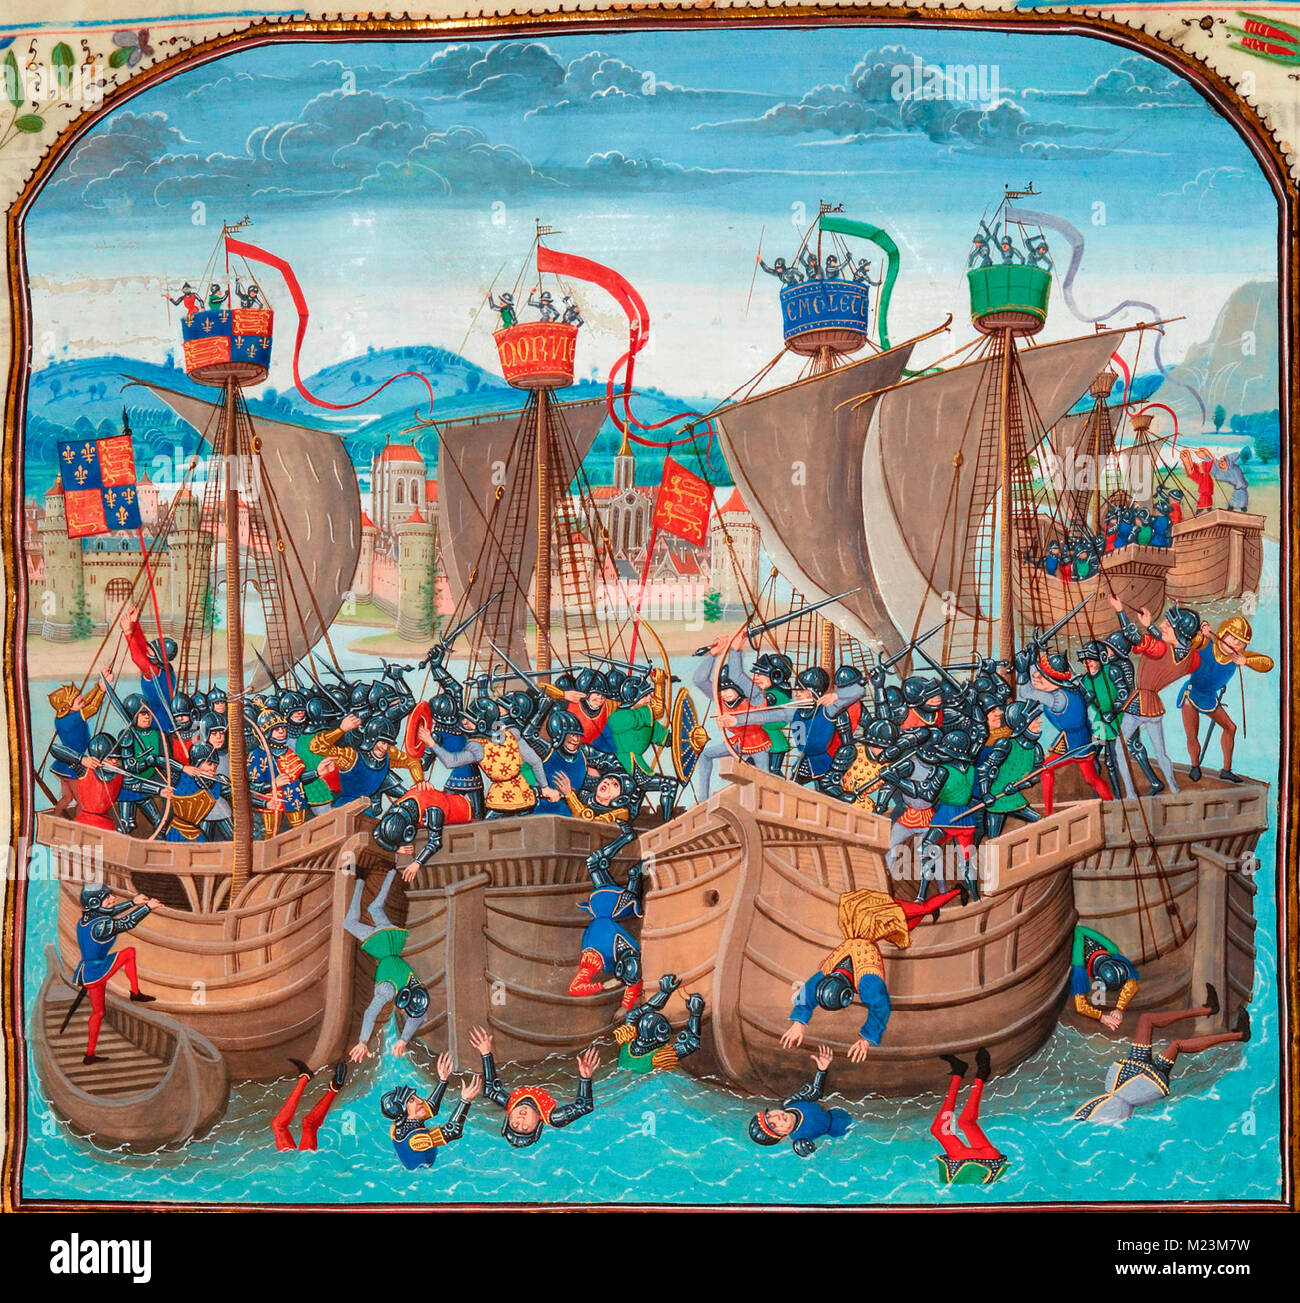 La bataille de Sluys, également appelée bataille de l'Ecluse, était une mer bataille livrée le 24 juin 1340 comme l'un des conflits d'ouverture de la guerre de Cent Ans entre la France et l'Angleterre. Banque D'Images